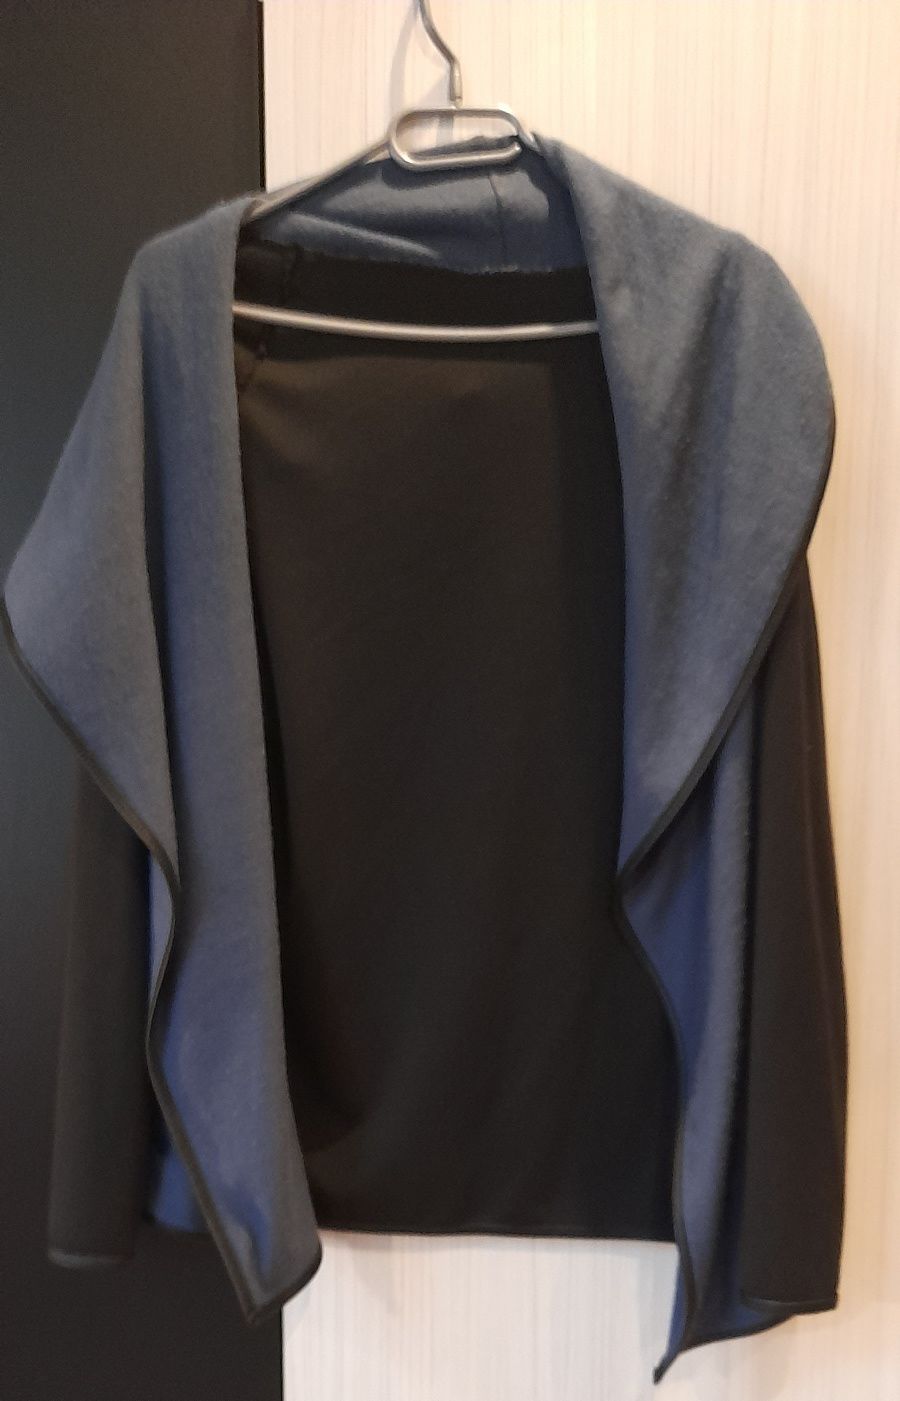 Płaszcz czarny niebieski damski kobiecy sweter